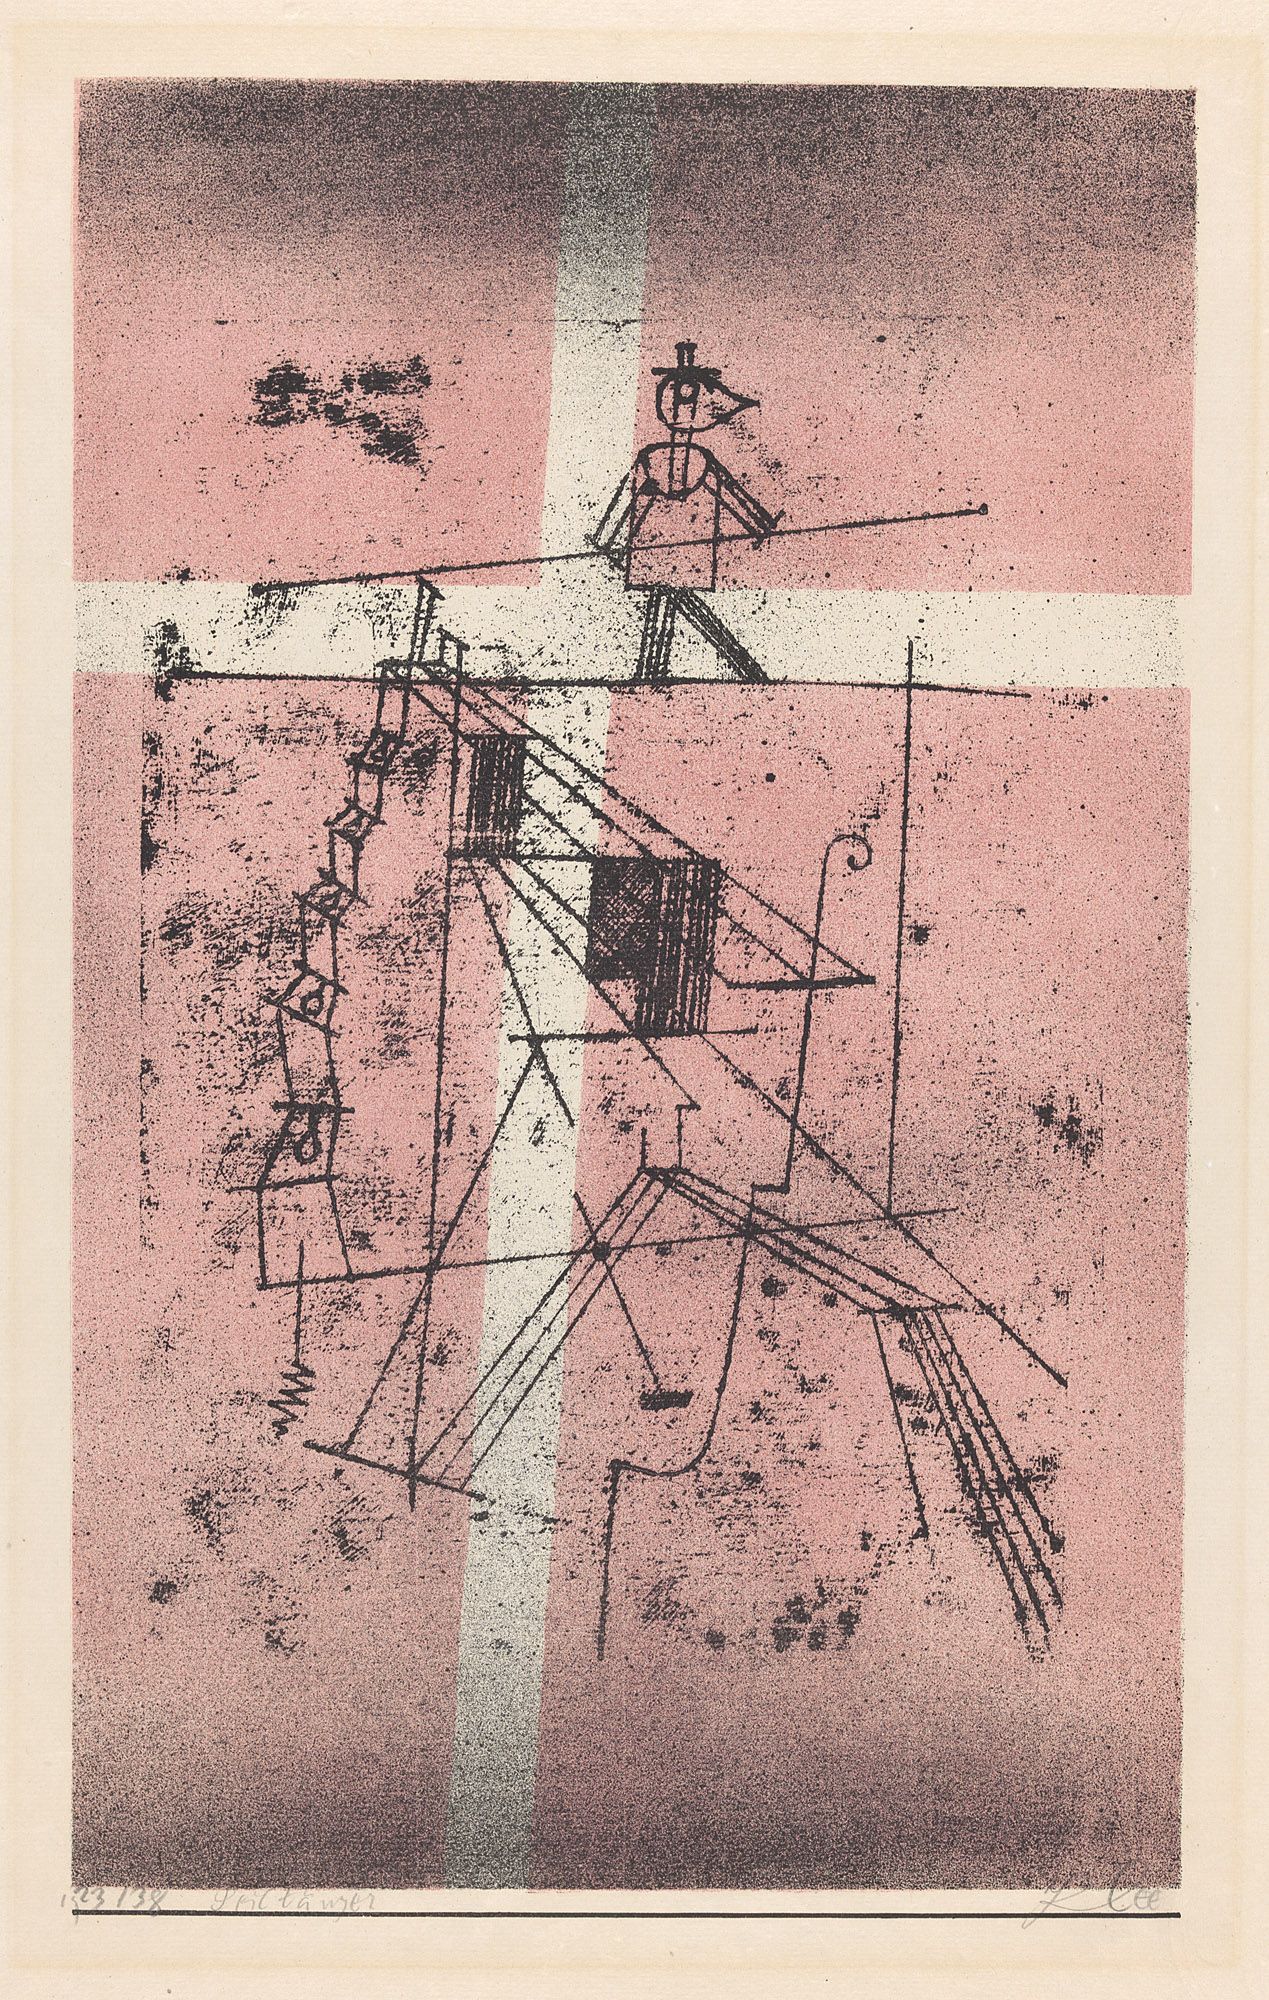 El funambulista by Paul Klee - 1923 Zentrum Paul Klee